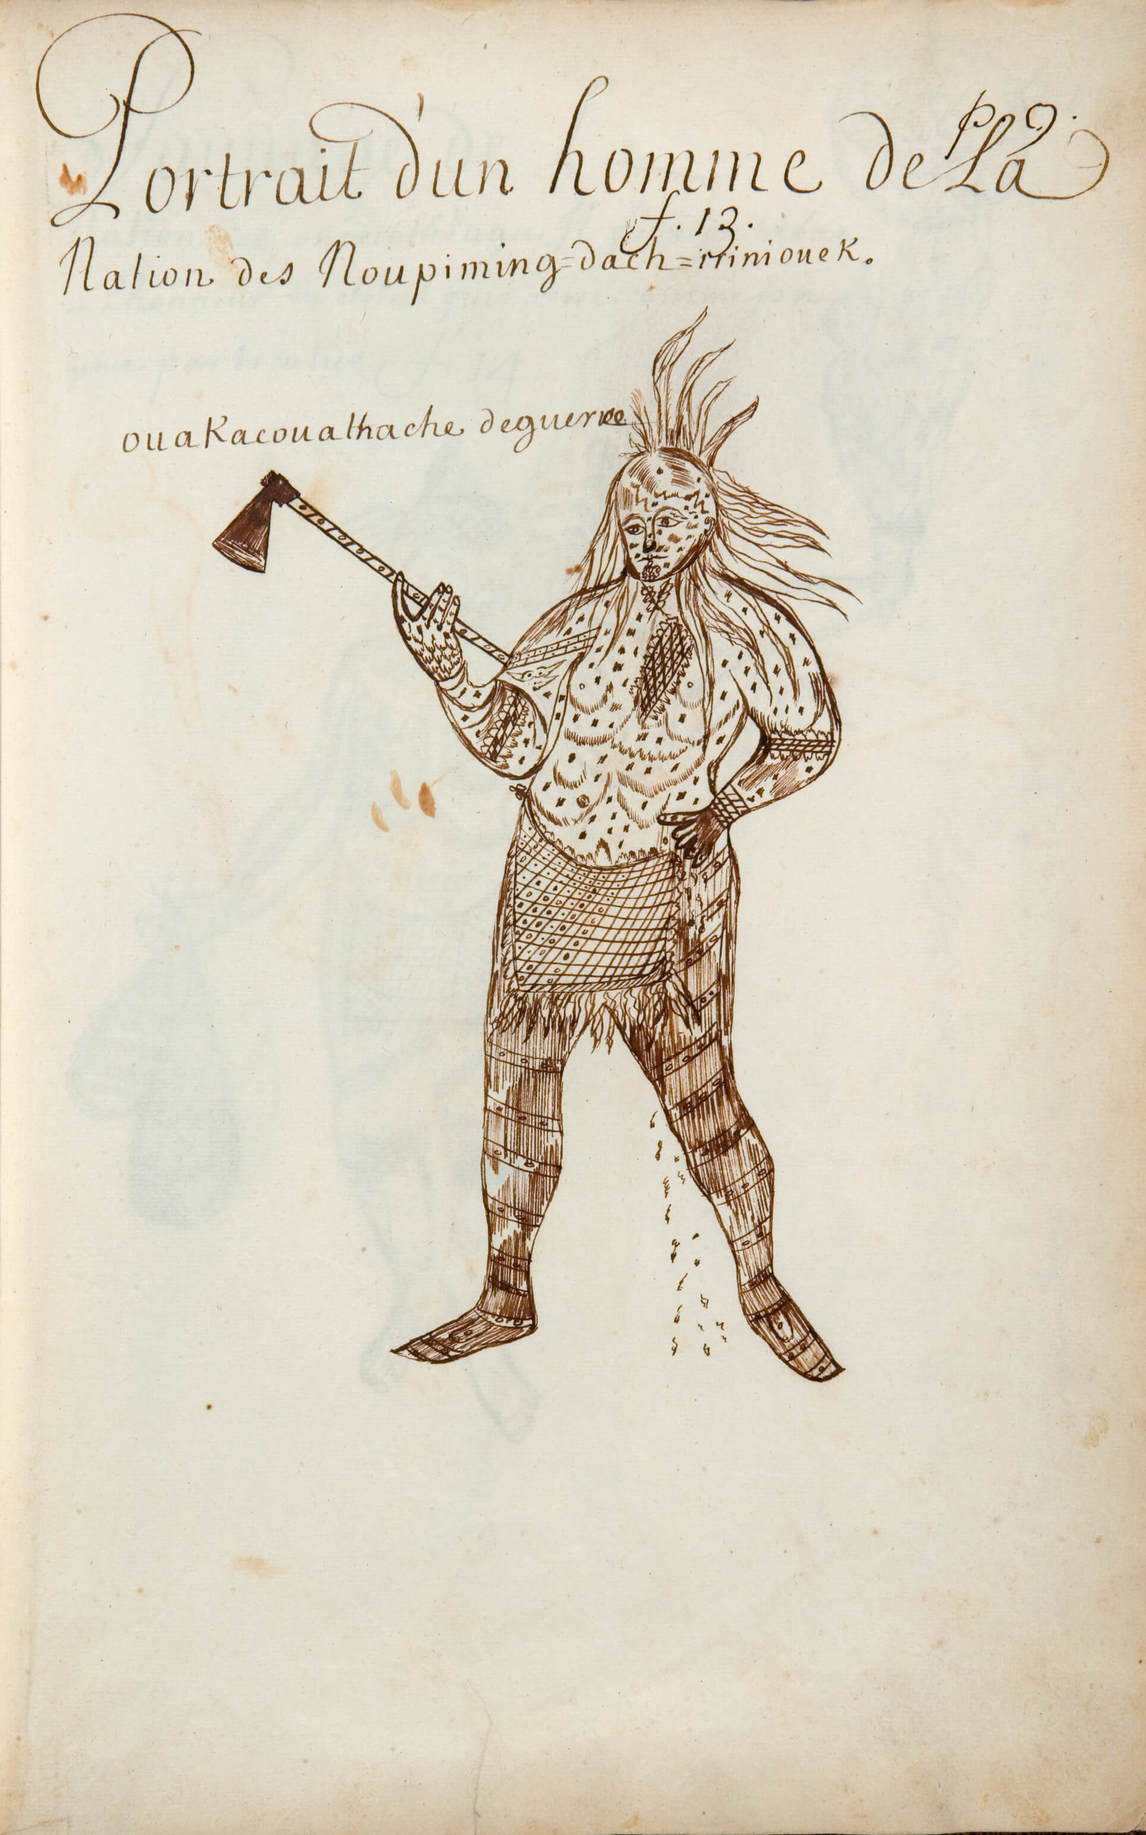 Art Canada Institute, Louis Nicolas, Portrait of a Man of the Nation of the Noupiming-dach-iriniouek (Portrait d’un homme de La Nation des Noupiming = dach = iriniouek), Codex Canadensis